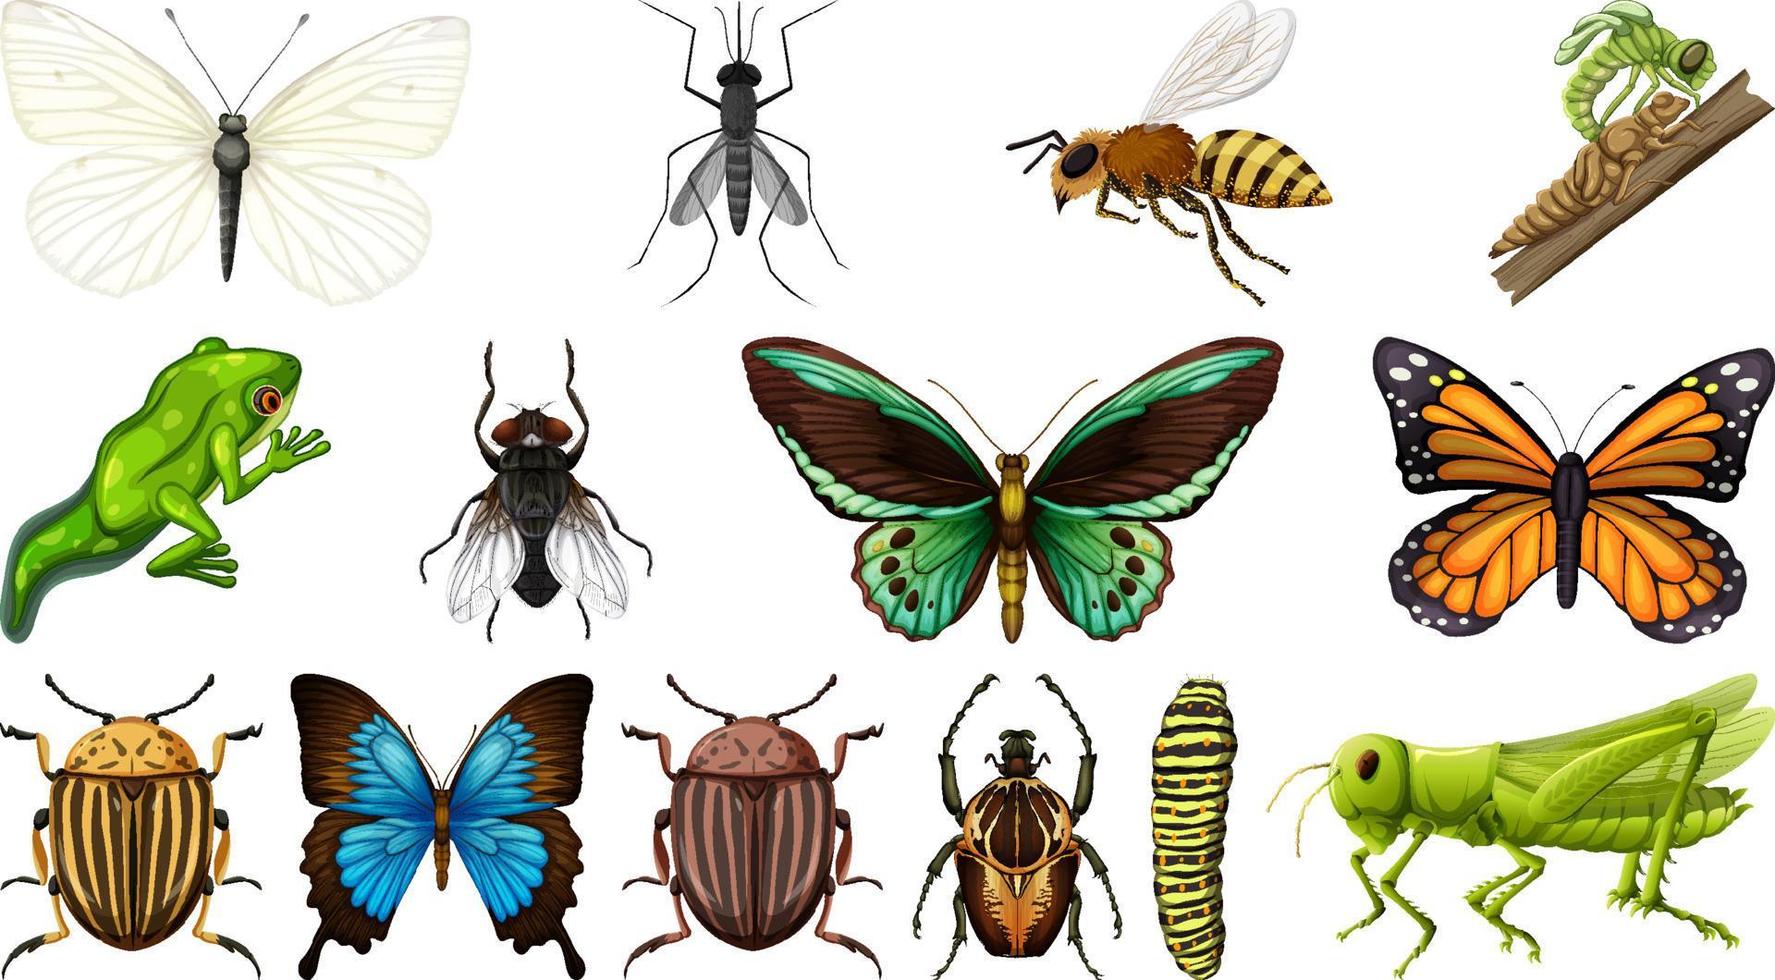 coleção de diferentes insetos isolada no fundo branco vetor